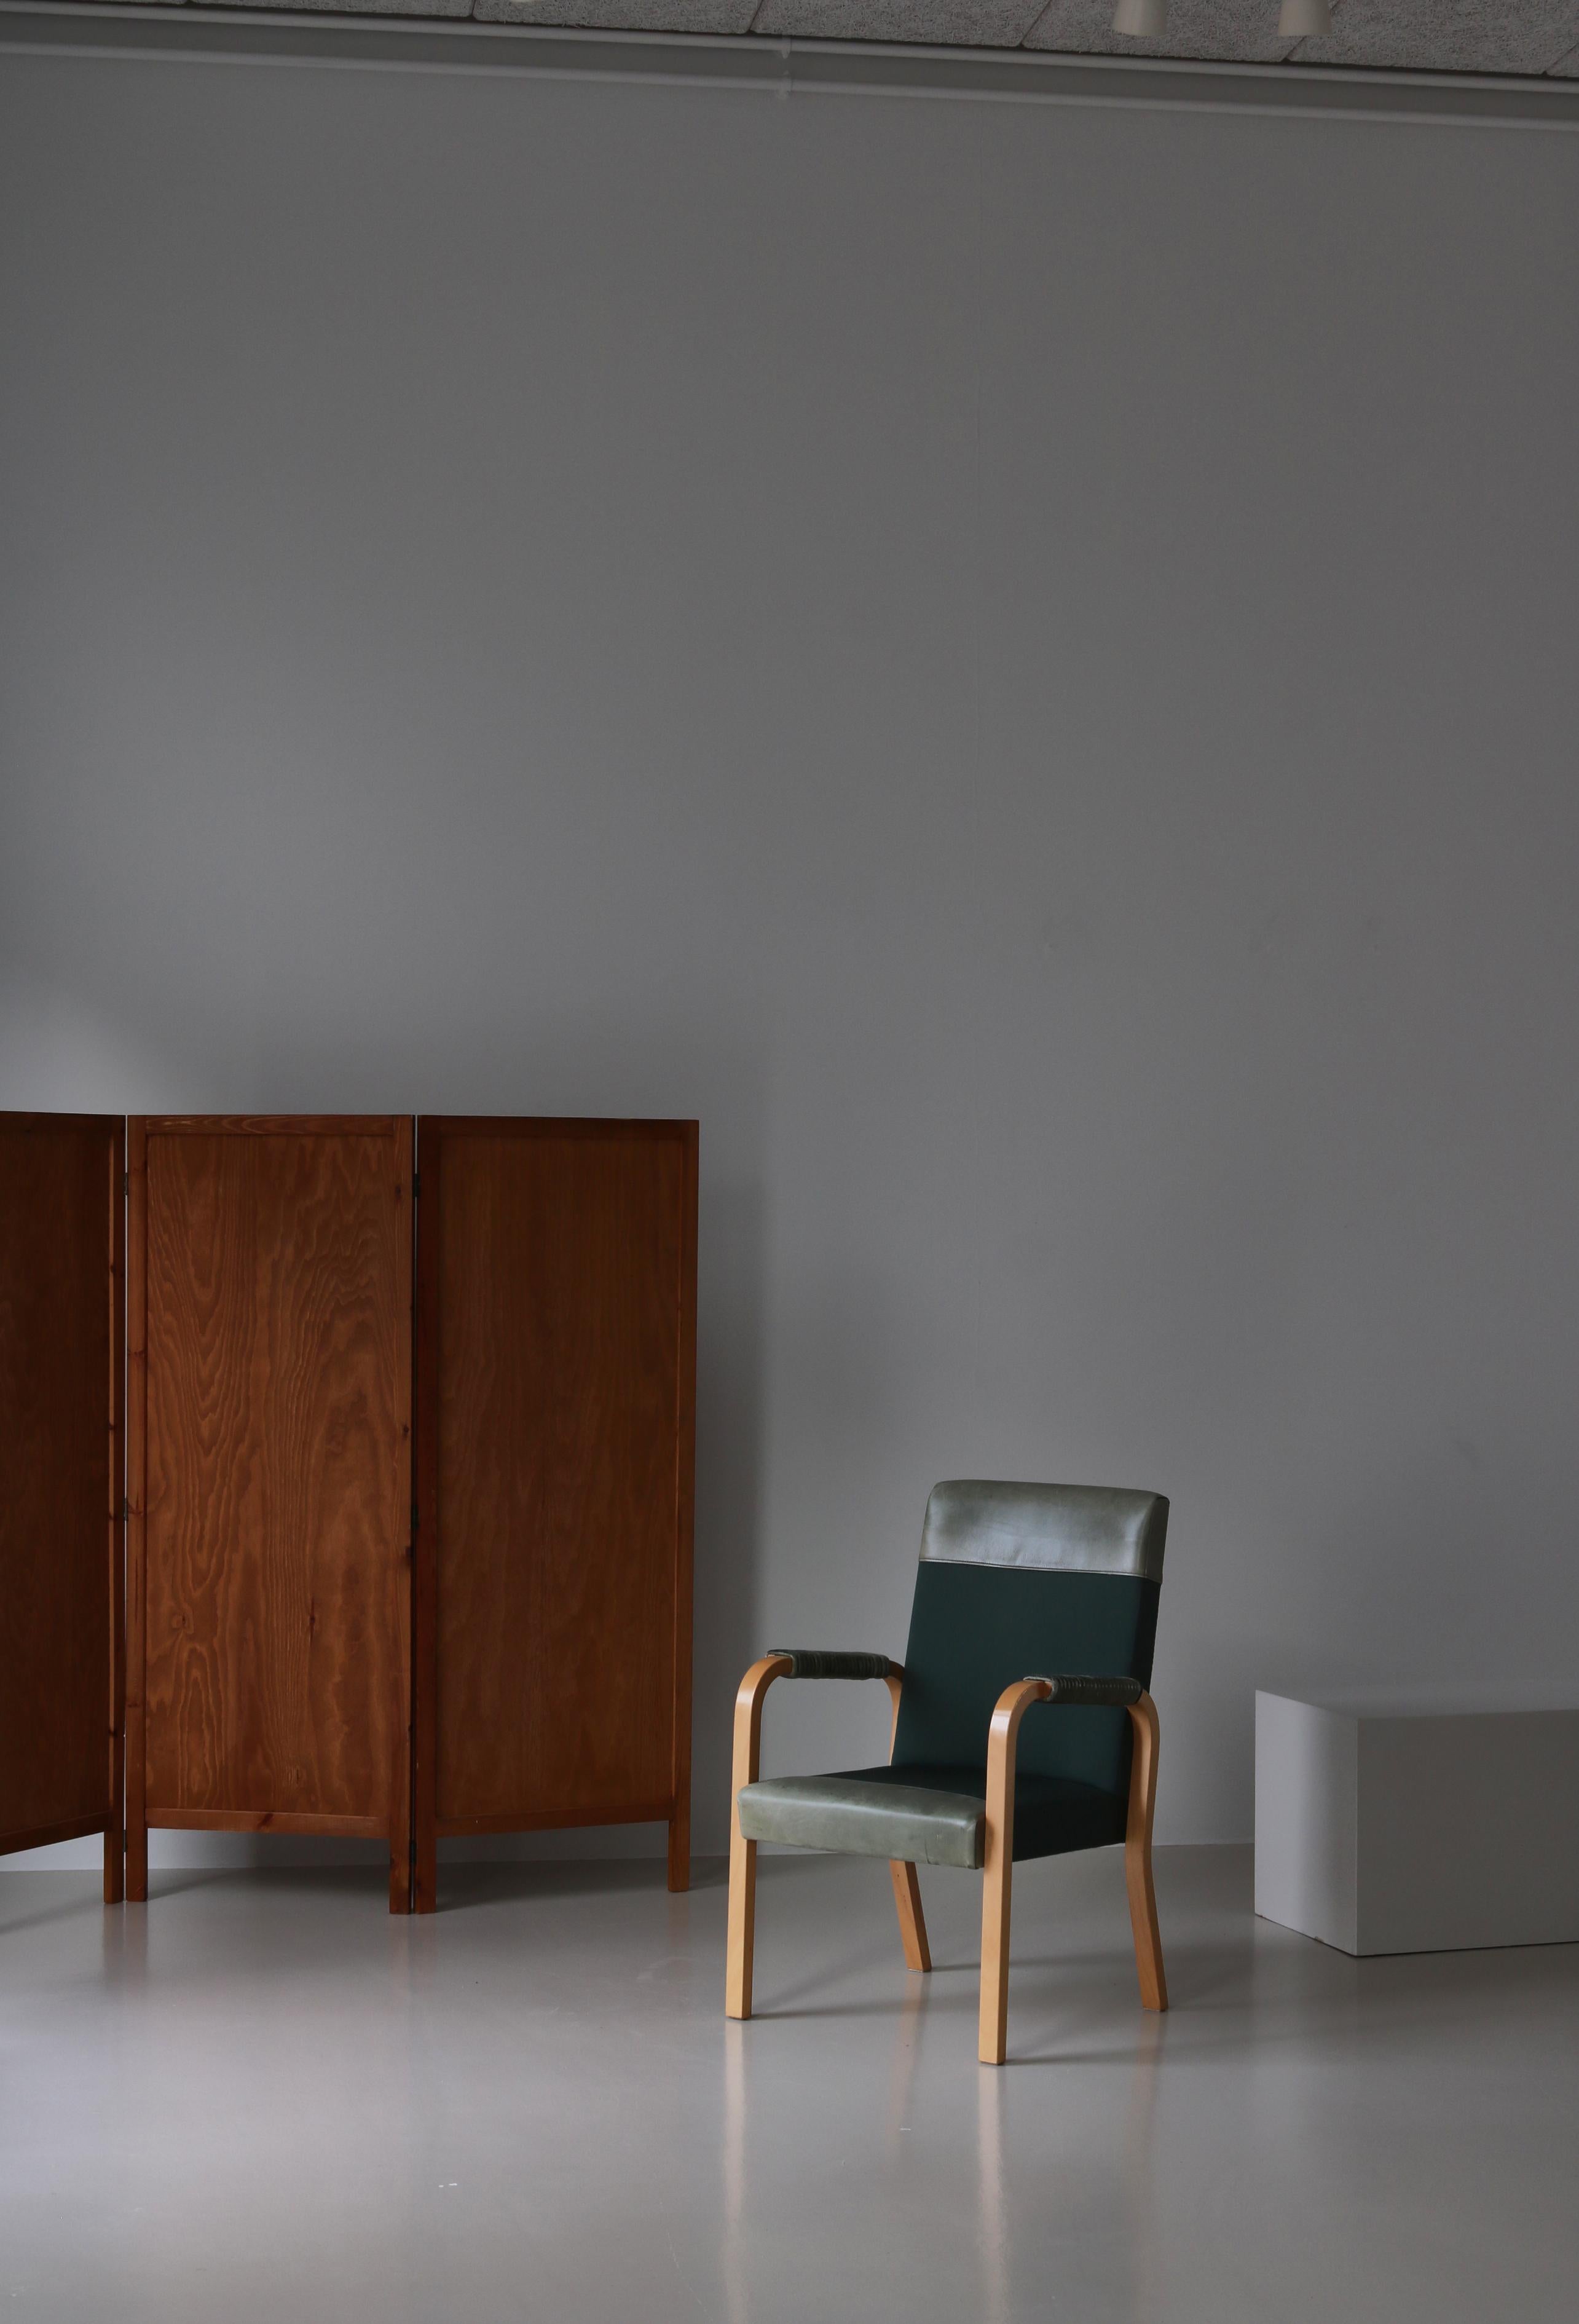 Très rare fauteuil d'Alvar Aalto réalisé pour le siège de Enso-Gutzeit (